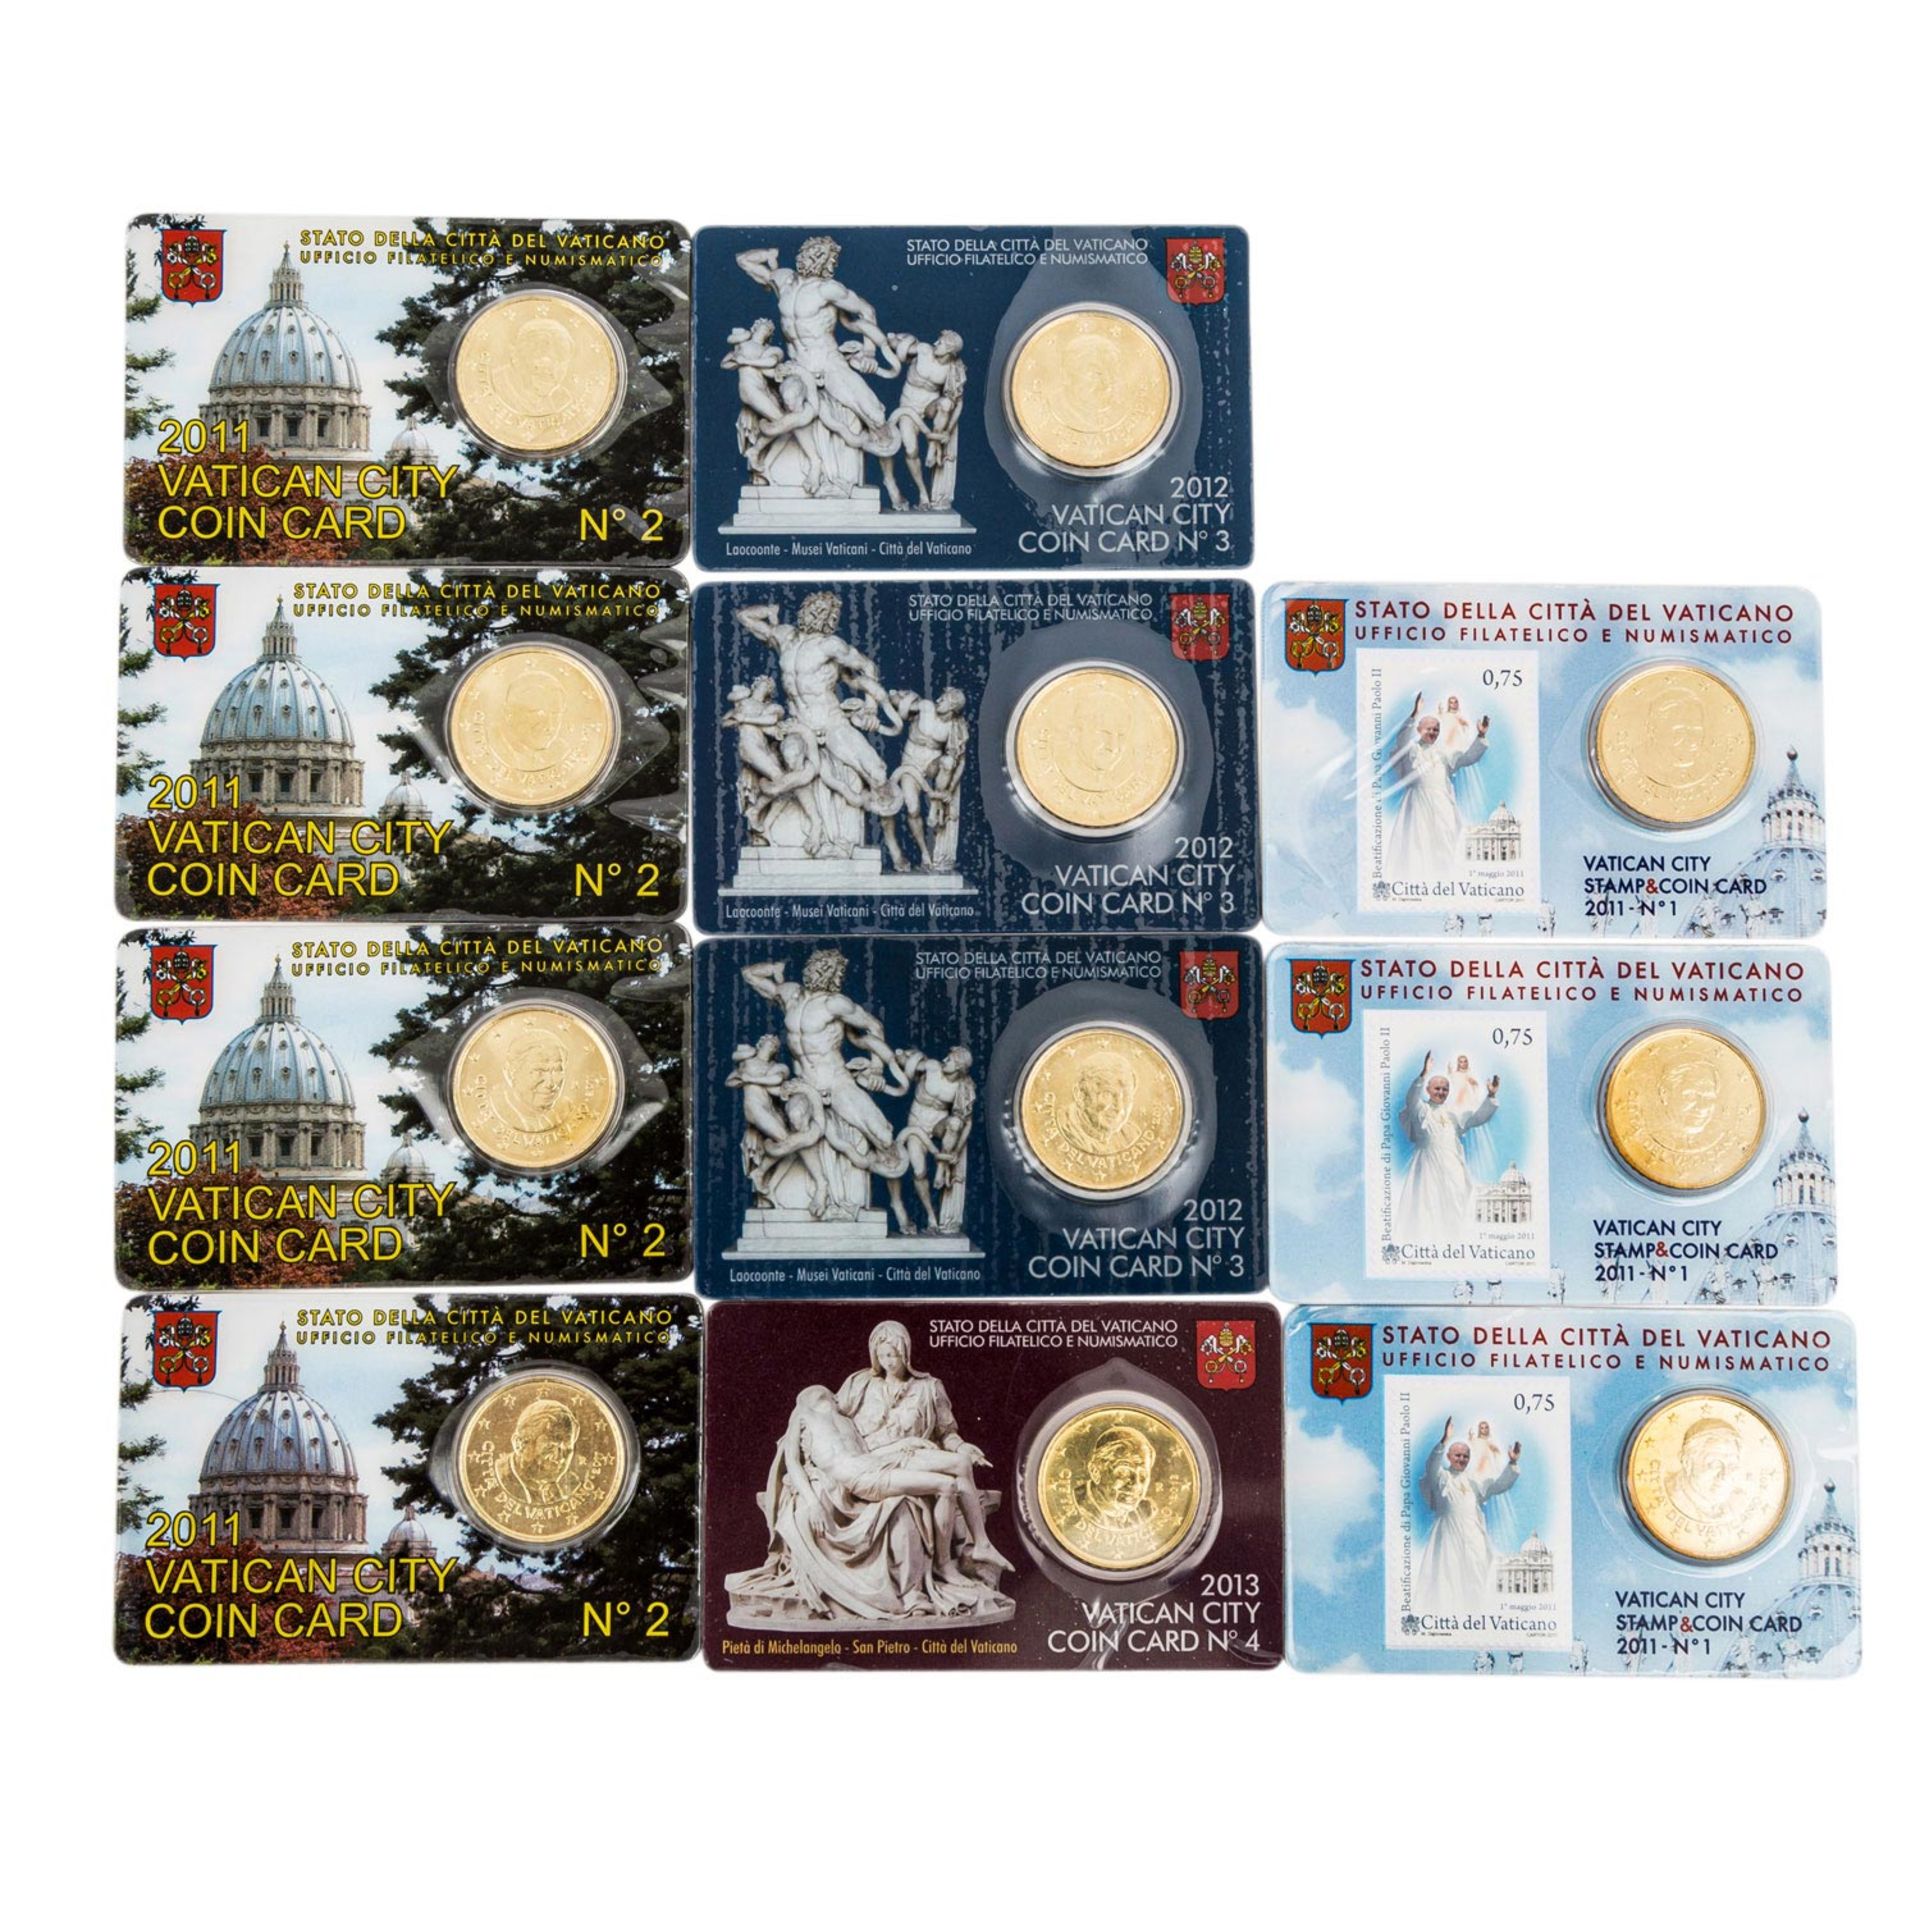 Vatican / Vatikan - 29 x Coin Card zu 50 Euro Cent,ex 2010/13, verschiedene, teils in Stückzahlen. - Bild 2 aus 2